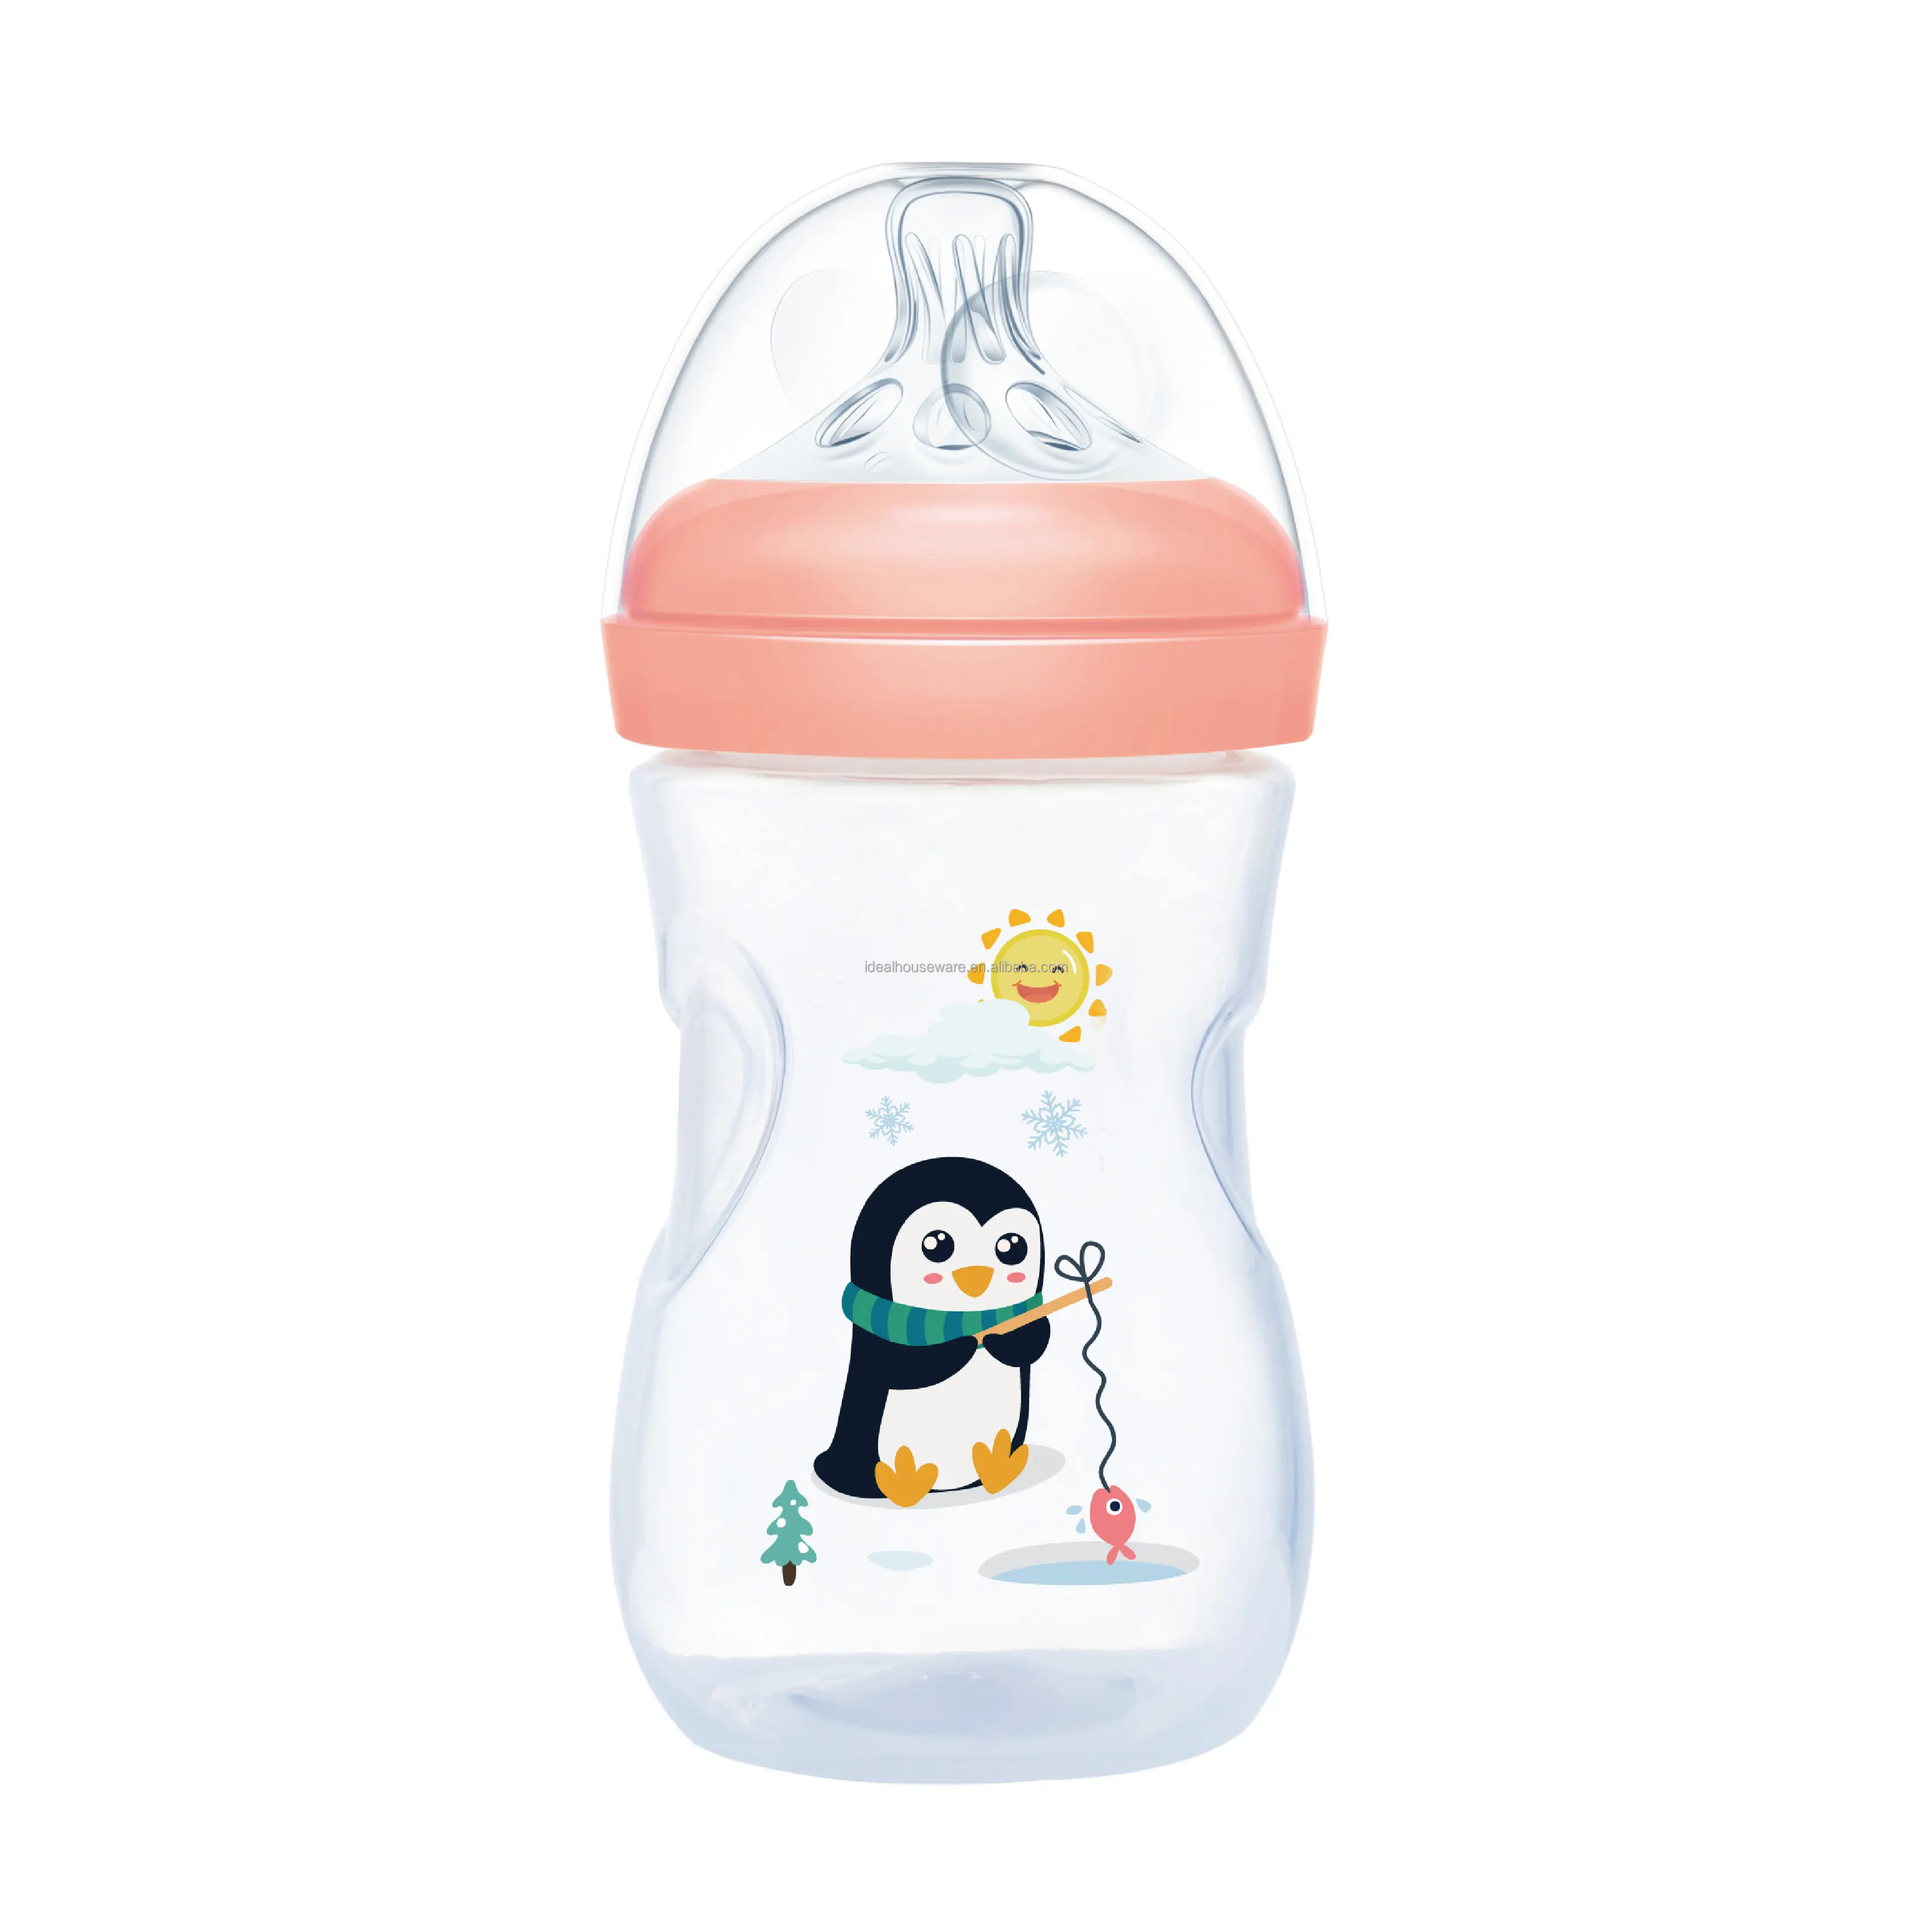 8oz PP Wide-Neck Baby Feeding Bottle, Novo estilo Baby Bottle, Moda Baby Feeding Set